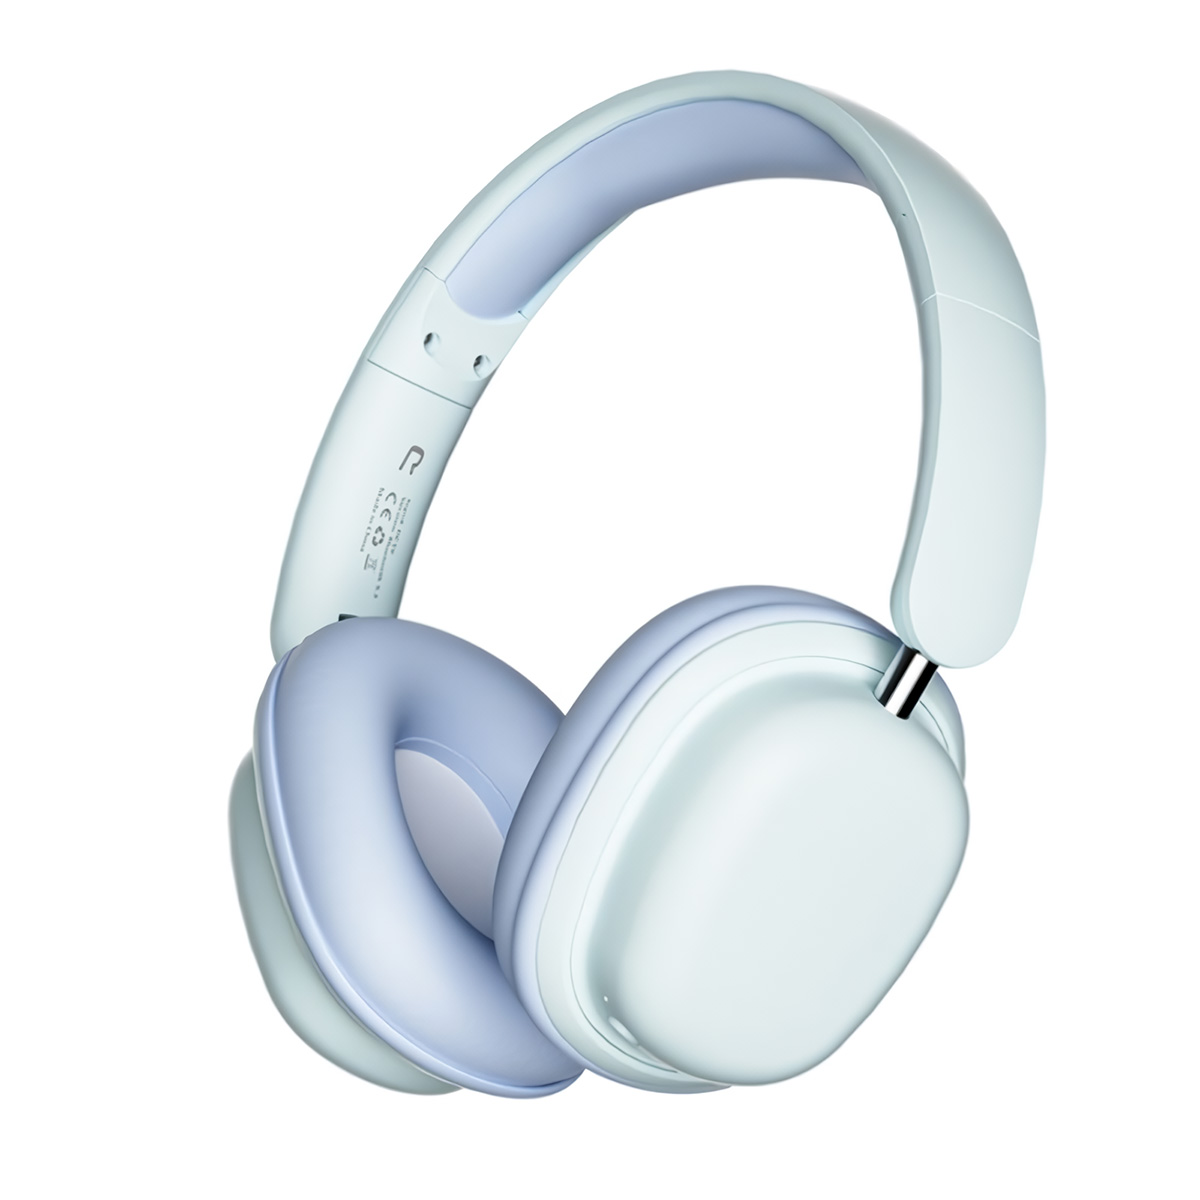 Auriculares Bluetooth Klack Sy-t1 Plegables Micrófono 20h De Autonomía - azul - 